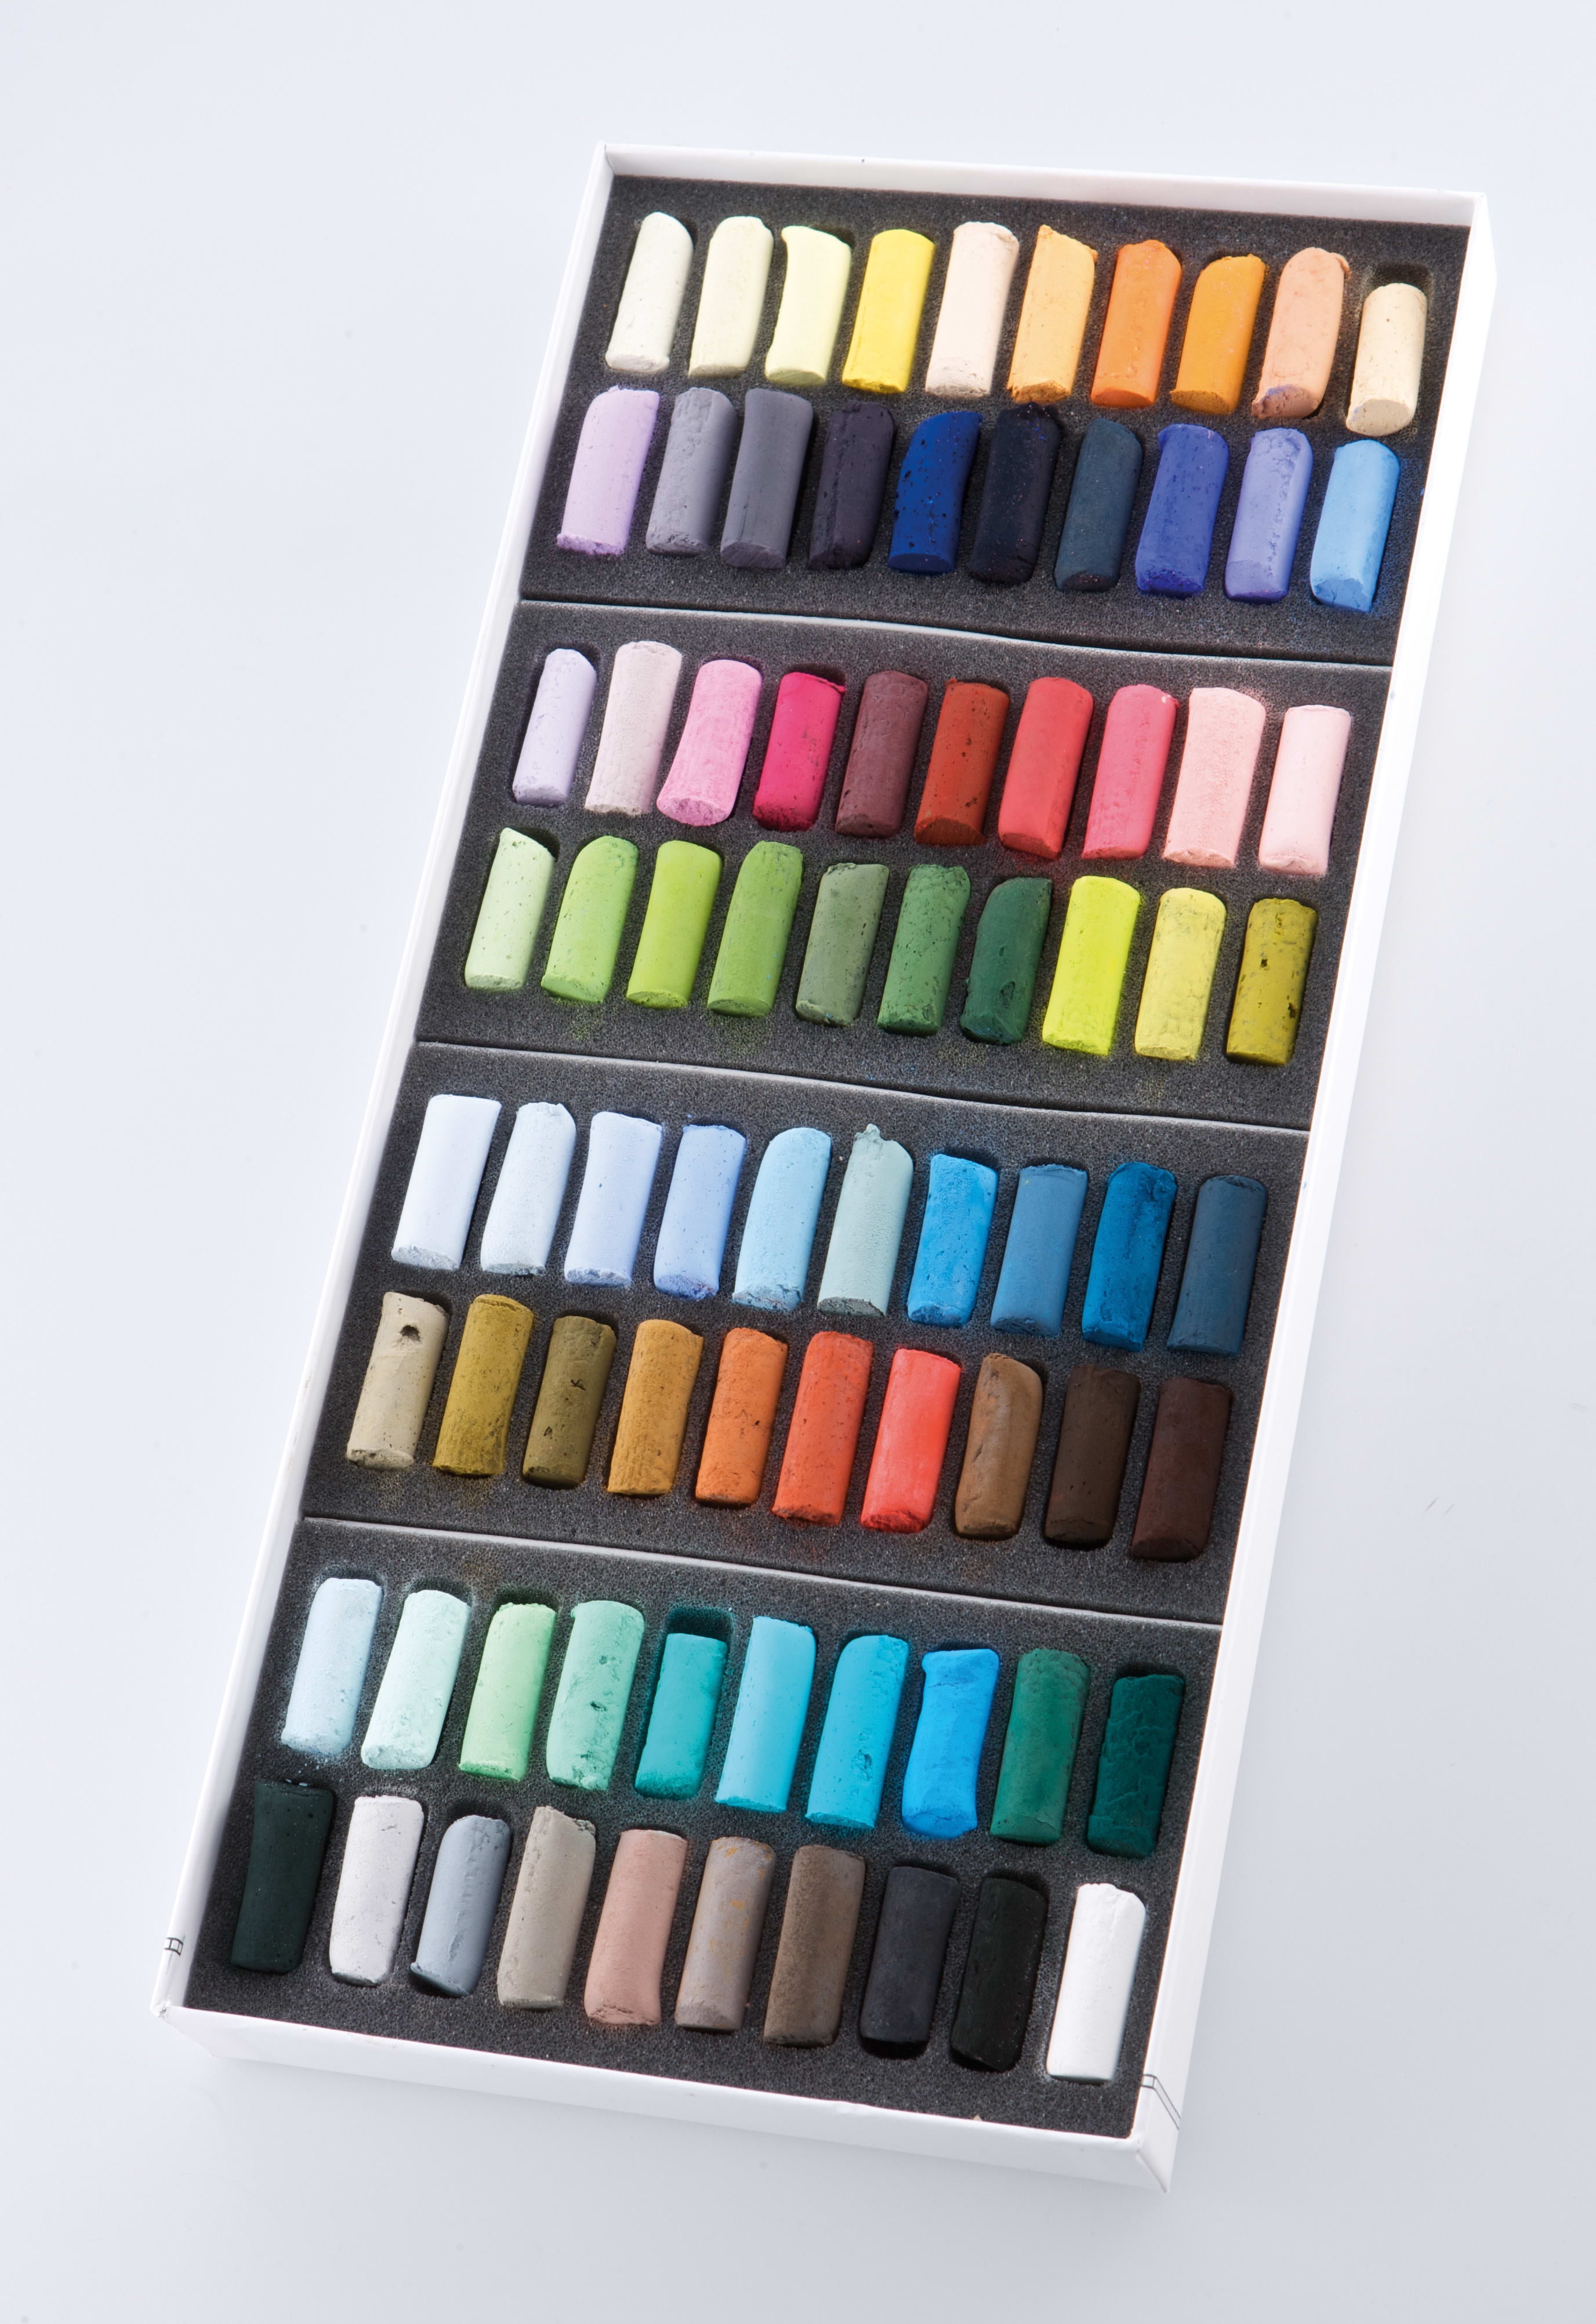 Sennelier Extra-Soft Pastel Half Stick Set, 80-Colors, Plein Air